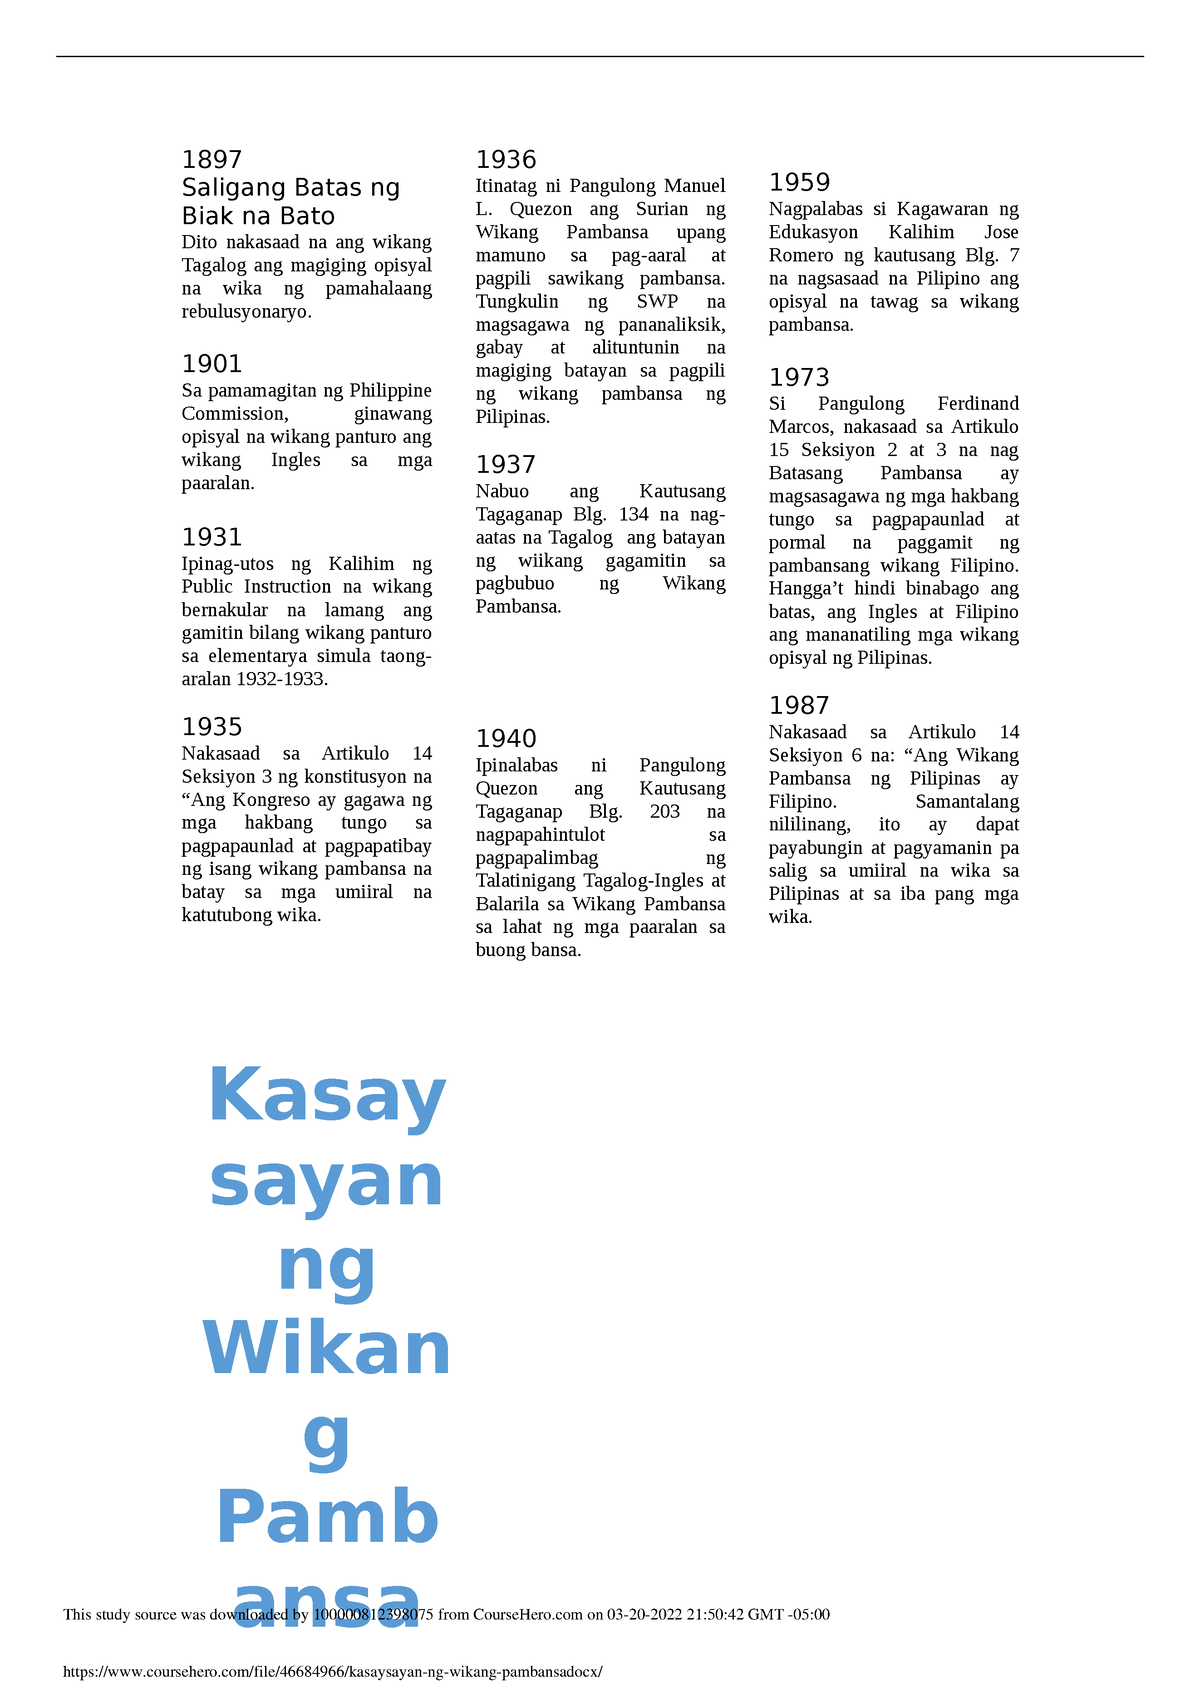 Kasaysayan ng wikang pambansa - 1897 Saligang Batas ng Biak na Bato